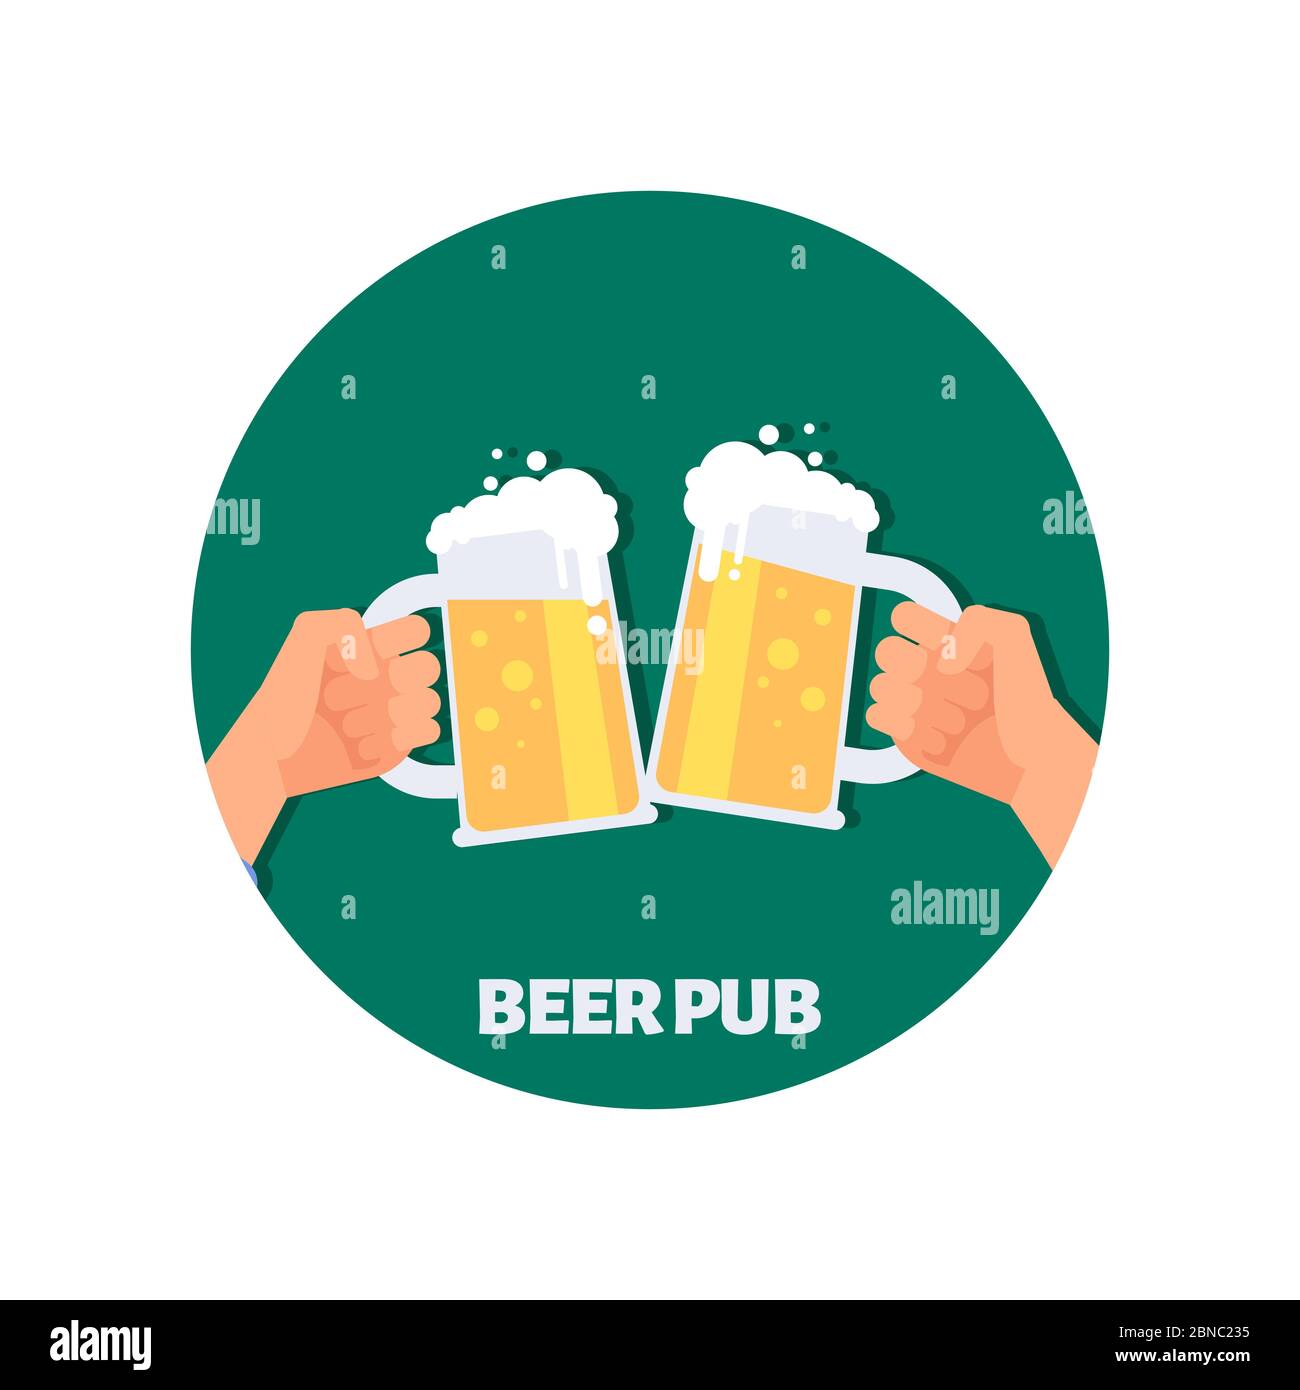 Vektorgrafik Bierstube mit Symbolen. Zwei Hände halten Biergläser. Illustration von Bier trinken, Pub-Emblem Stock Vektor